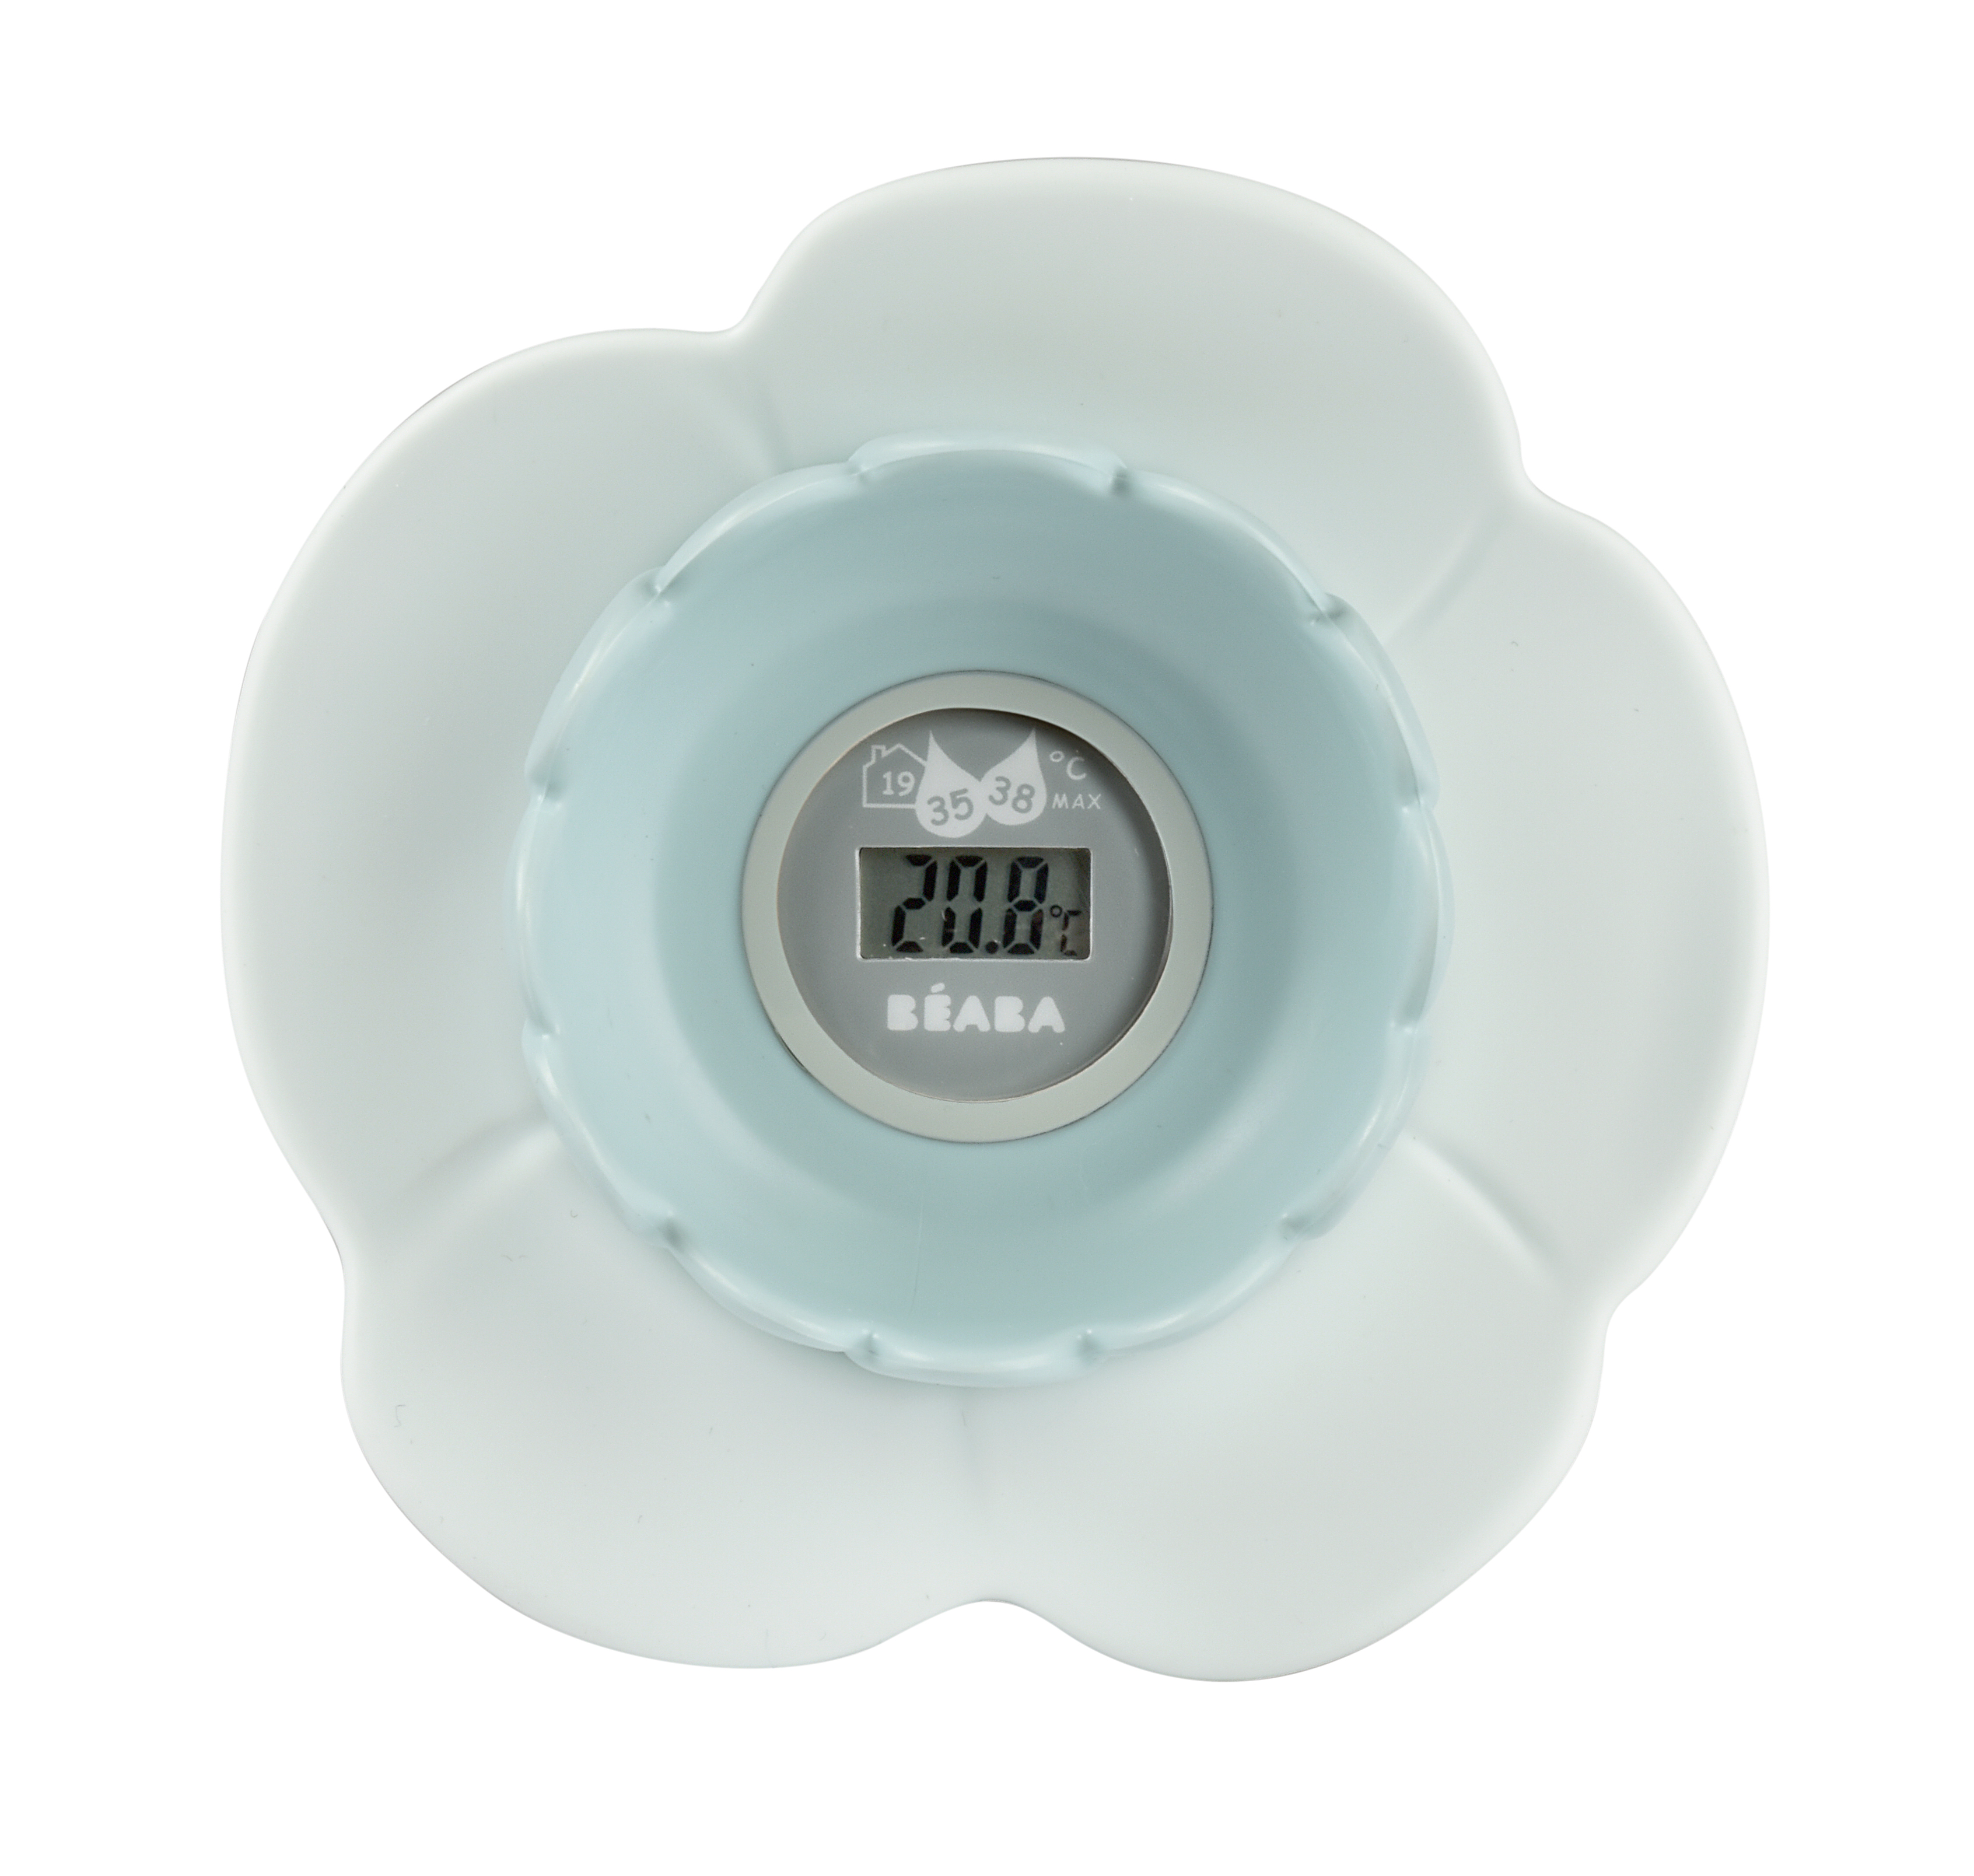 Термометр для воды и воздуха детский Beaba LOTUS Комнатный, голубой термометр комнатный дерево деревянный блистер тб 206